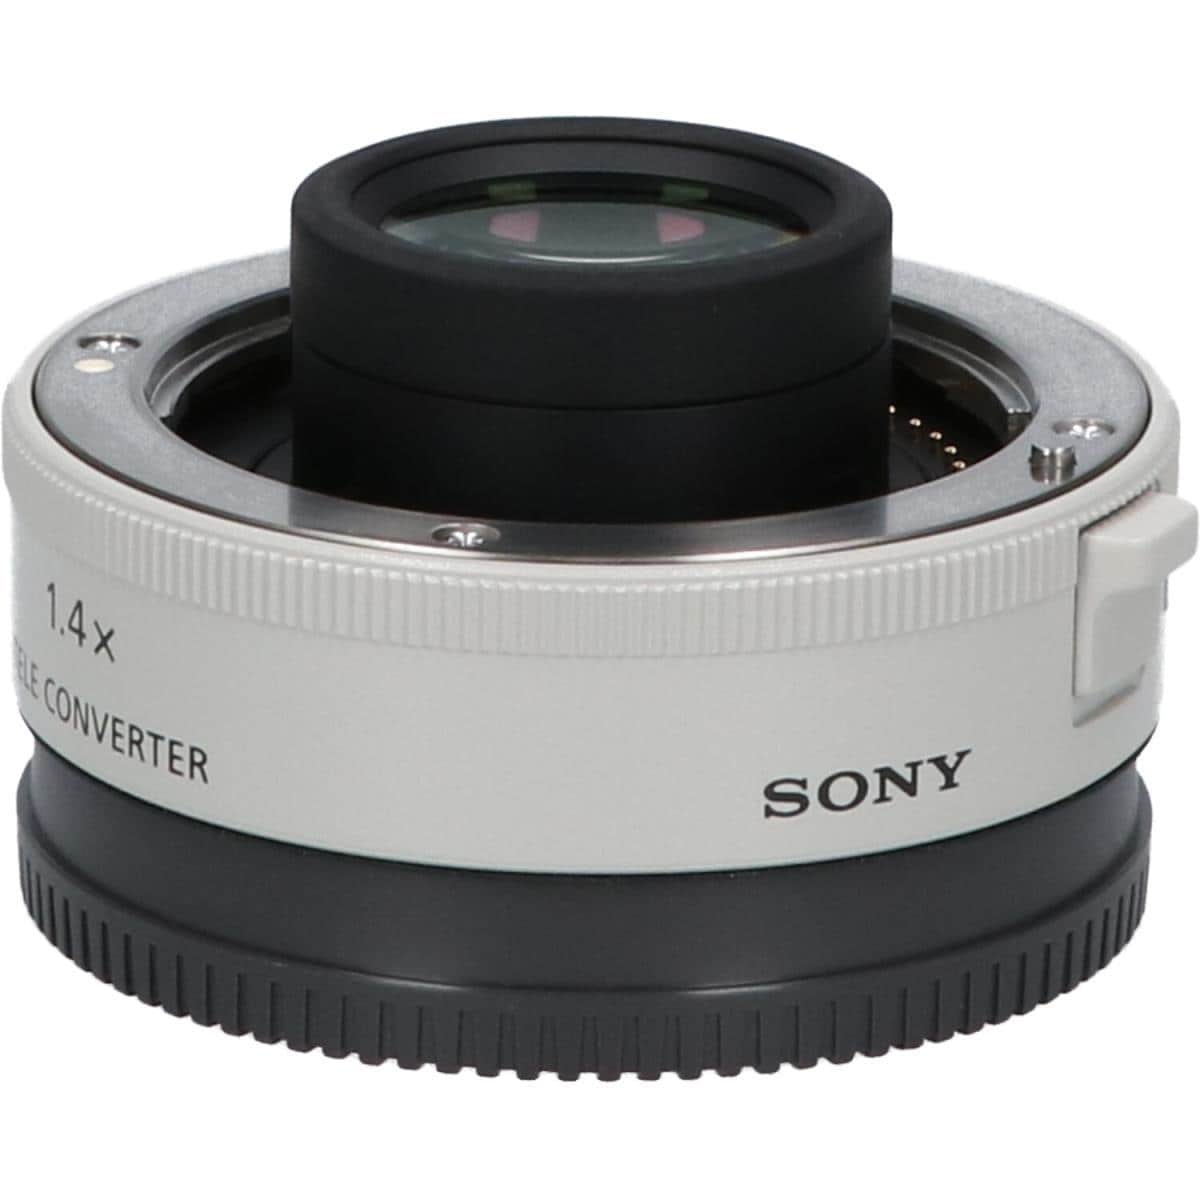 美品・保証有】 SEL14TC 1.4X テレコンバーター Sony - レンズ(単焦点)